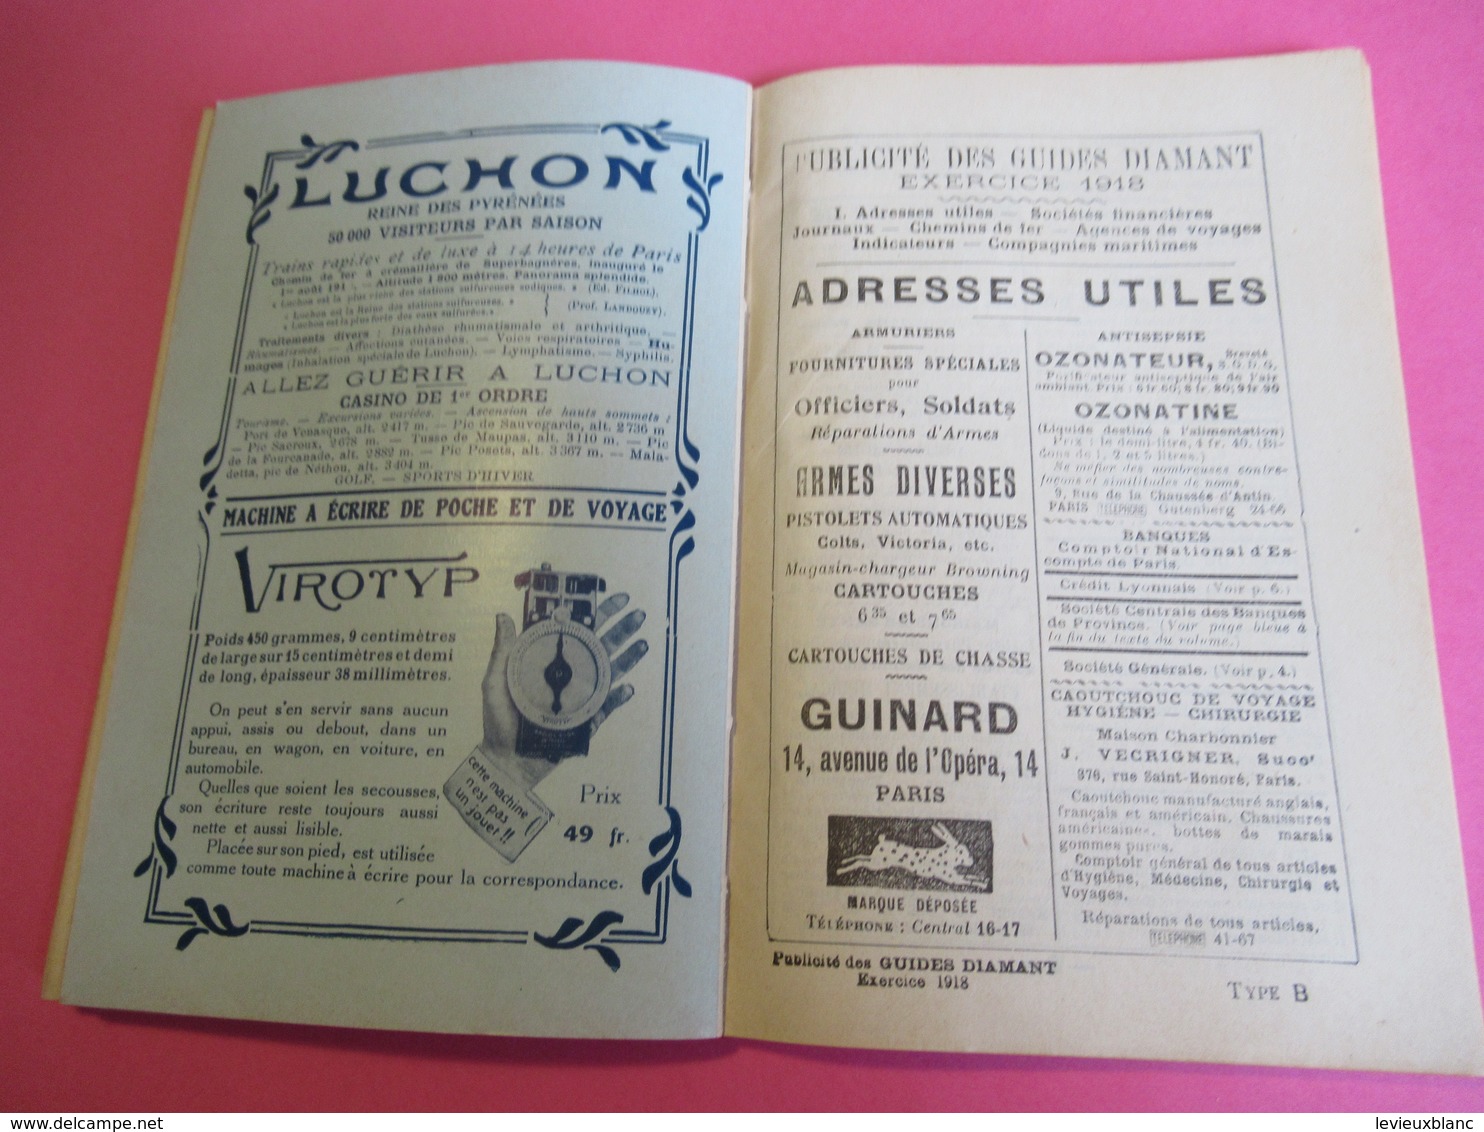 GuidesDiamant/ Le-MONT-DORE La- BOURBOULE SAINT-NECTAIRE/Hachette et Cie/1918        PGC269